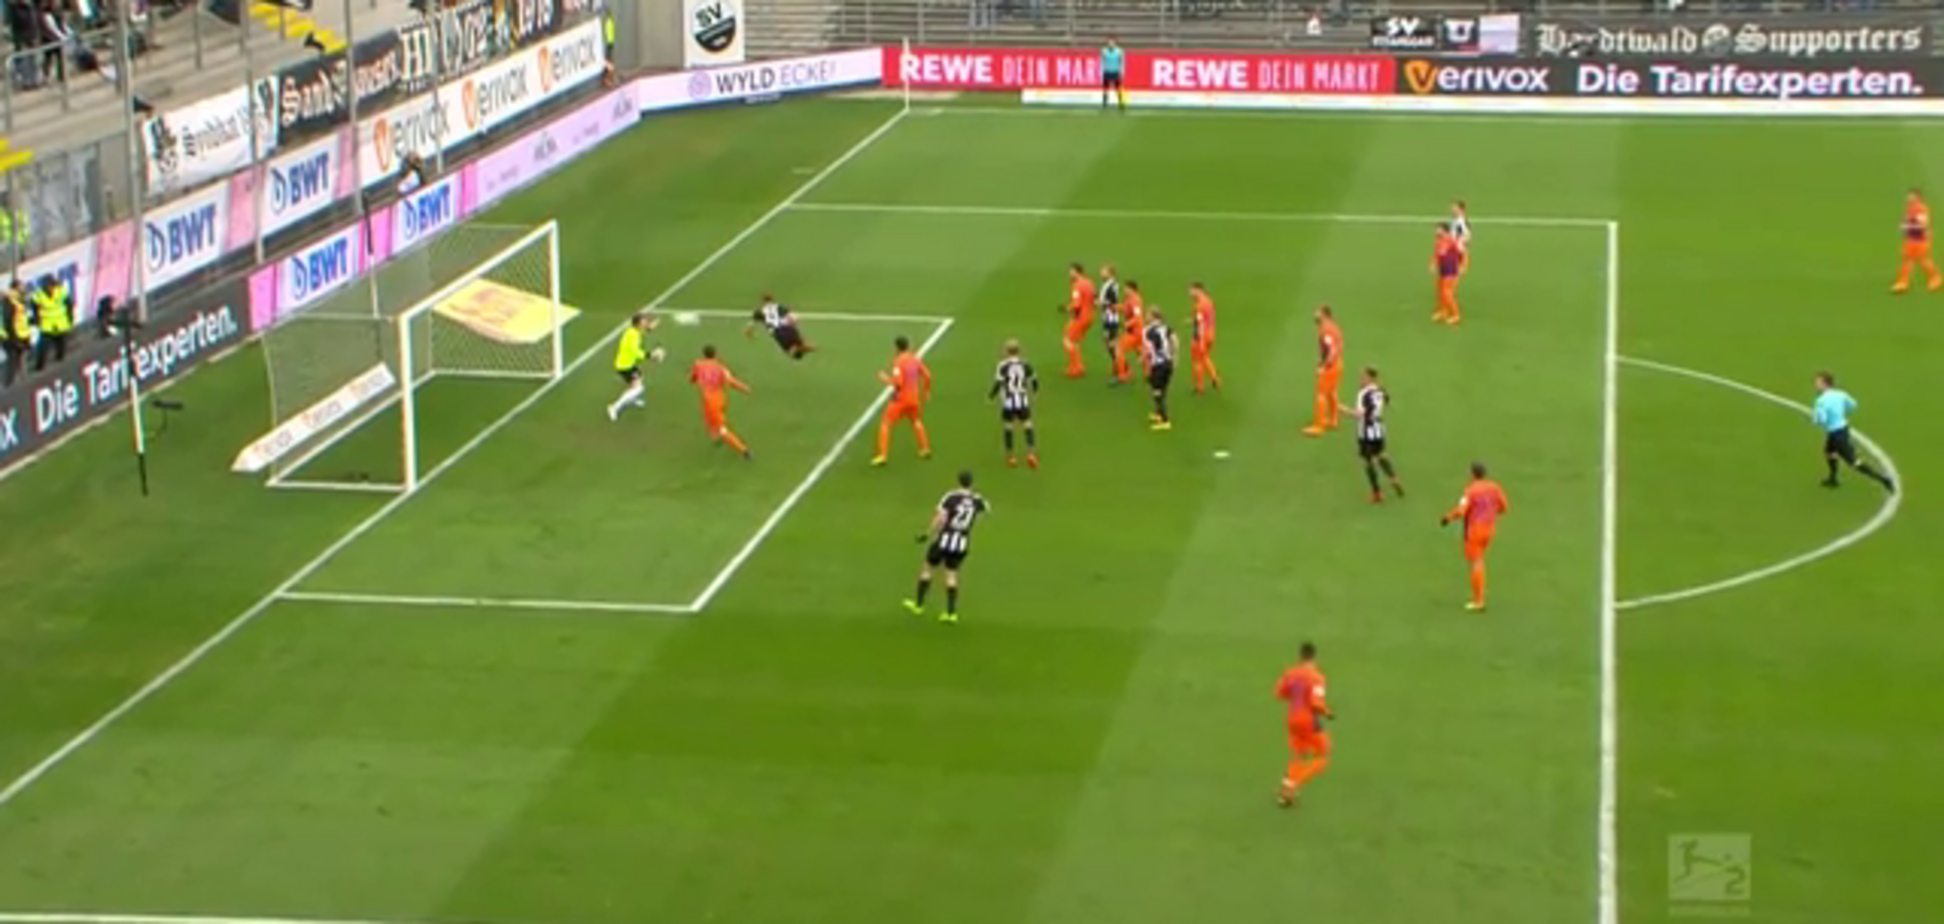 Німецький футболіст забив фантастичний гол 'ударом скорпіона' - опубліковано відео